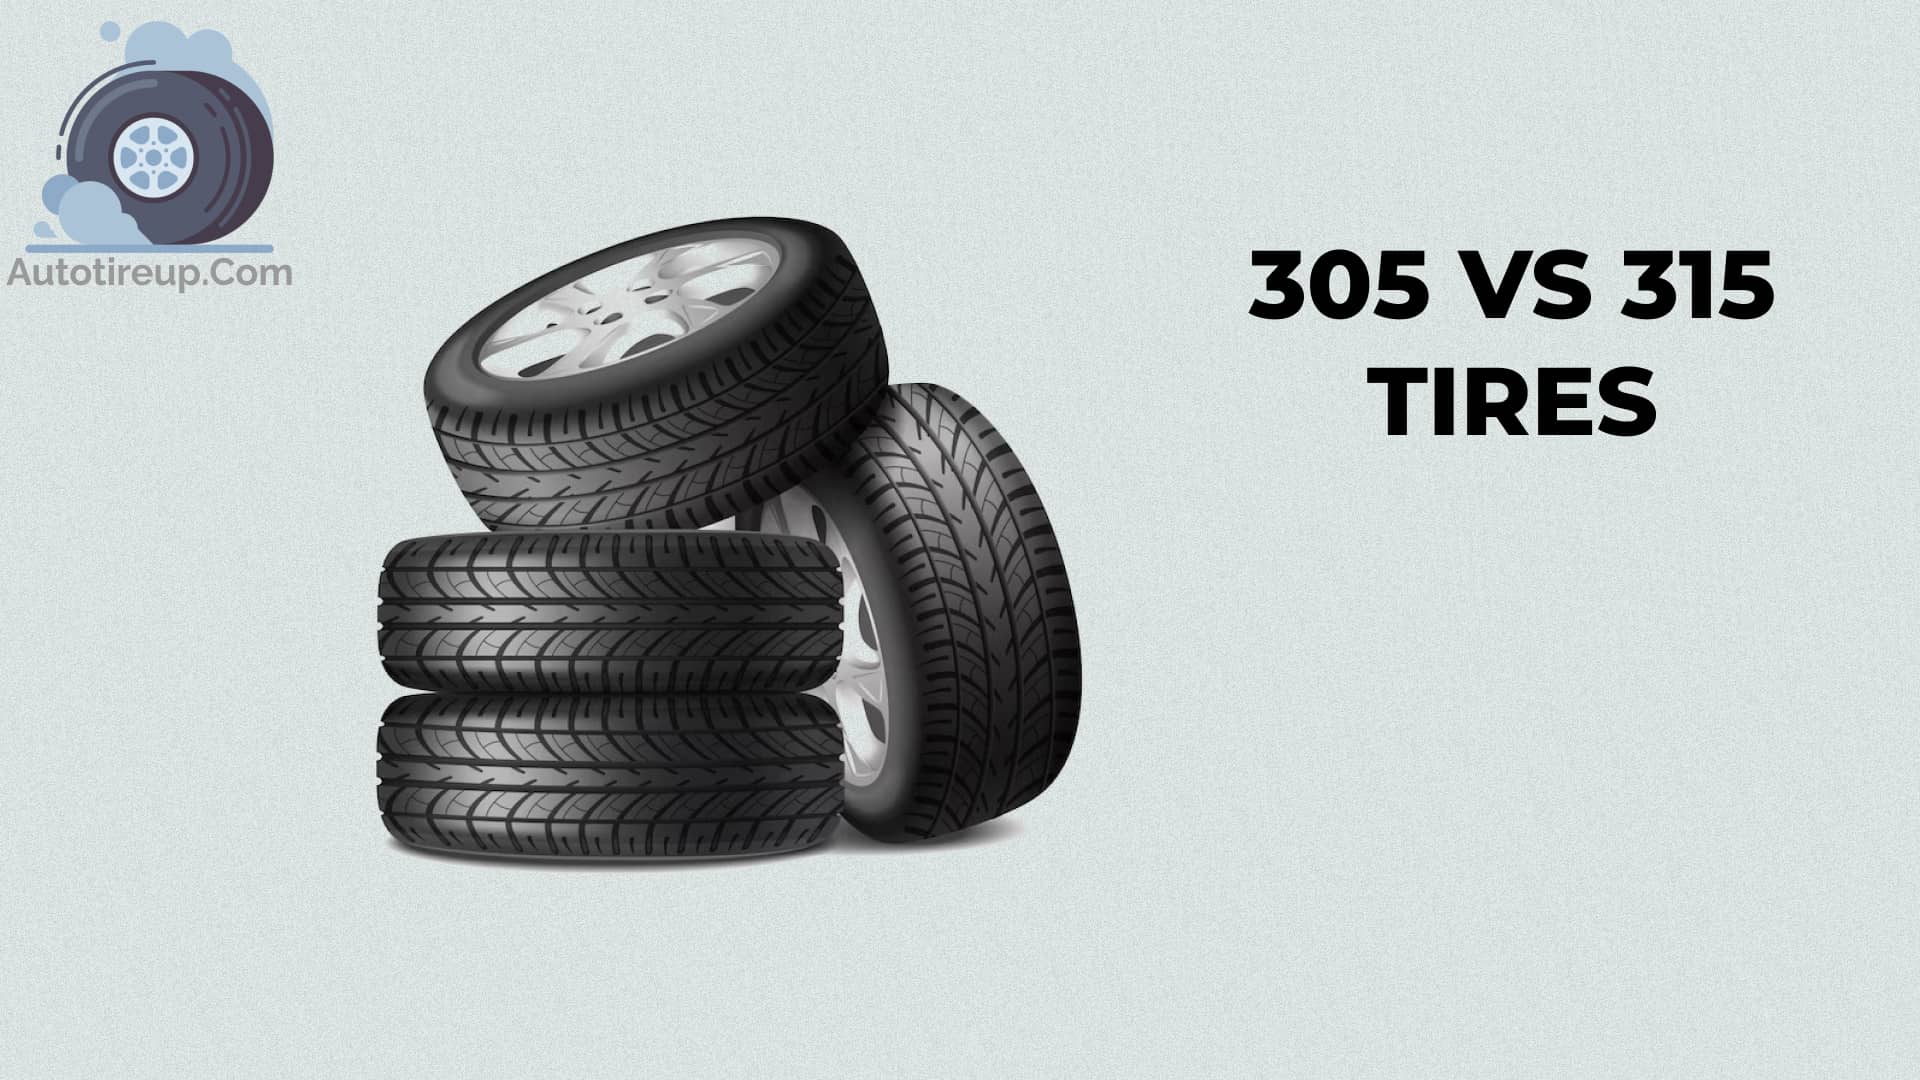 305 vs 315 tires